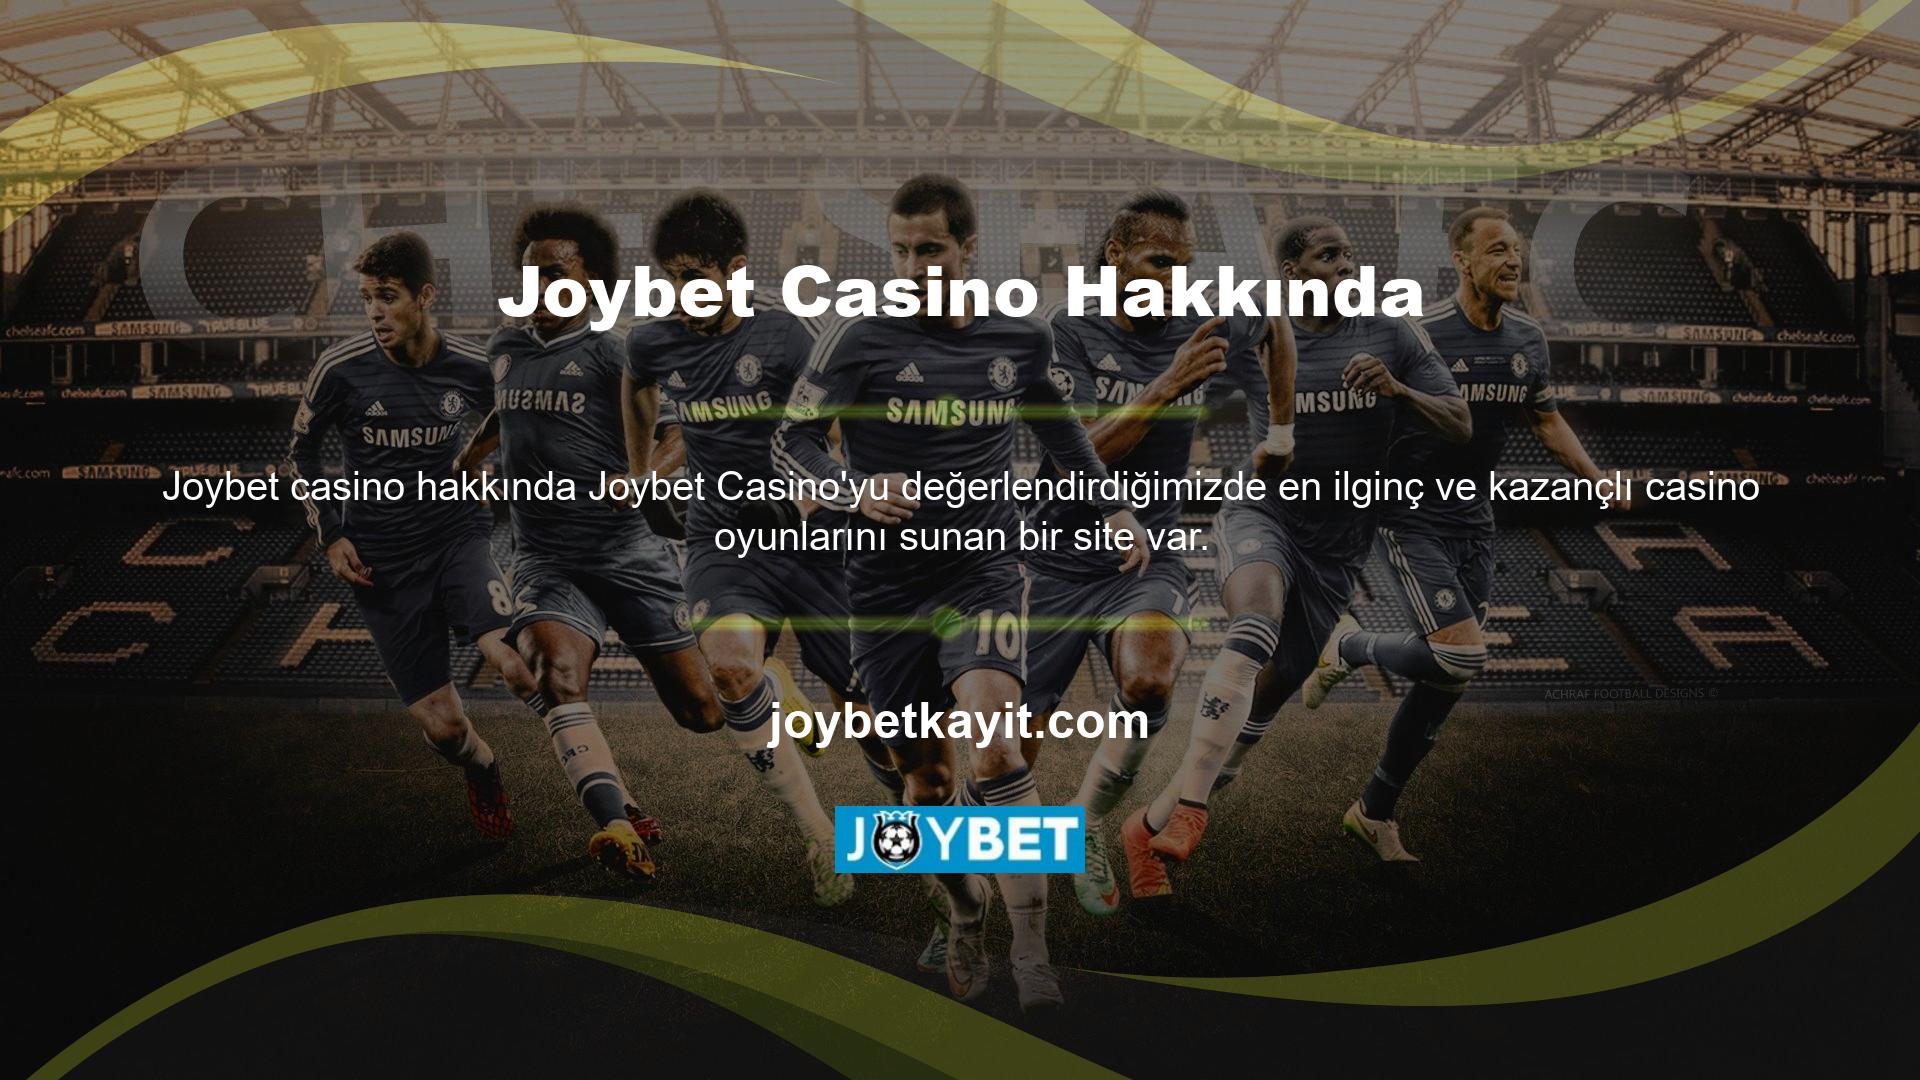 Joybet Casino dünyasında sizi neler bekliyor! 5 farklı kategoride en ünlü canlı casinoları ve oyunları deneyimleyerek gelirinizi artırın ve sorunsuz ve hızlı ödemeler alın